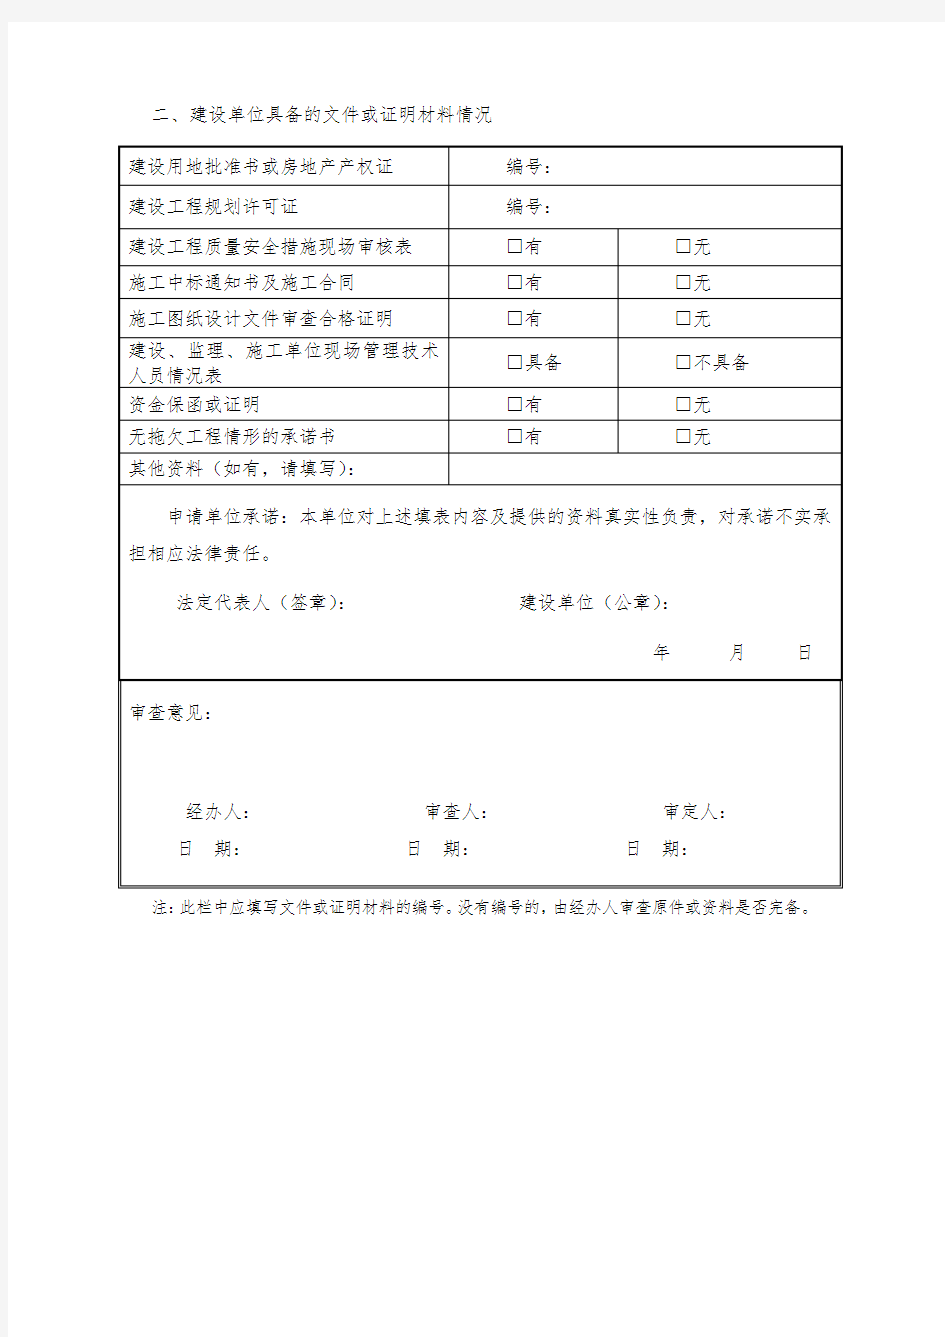 上海市建筑工程施工许可申请表